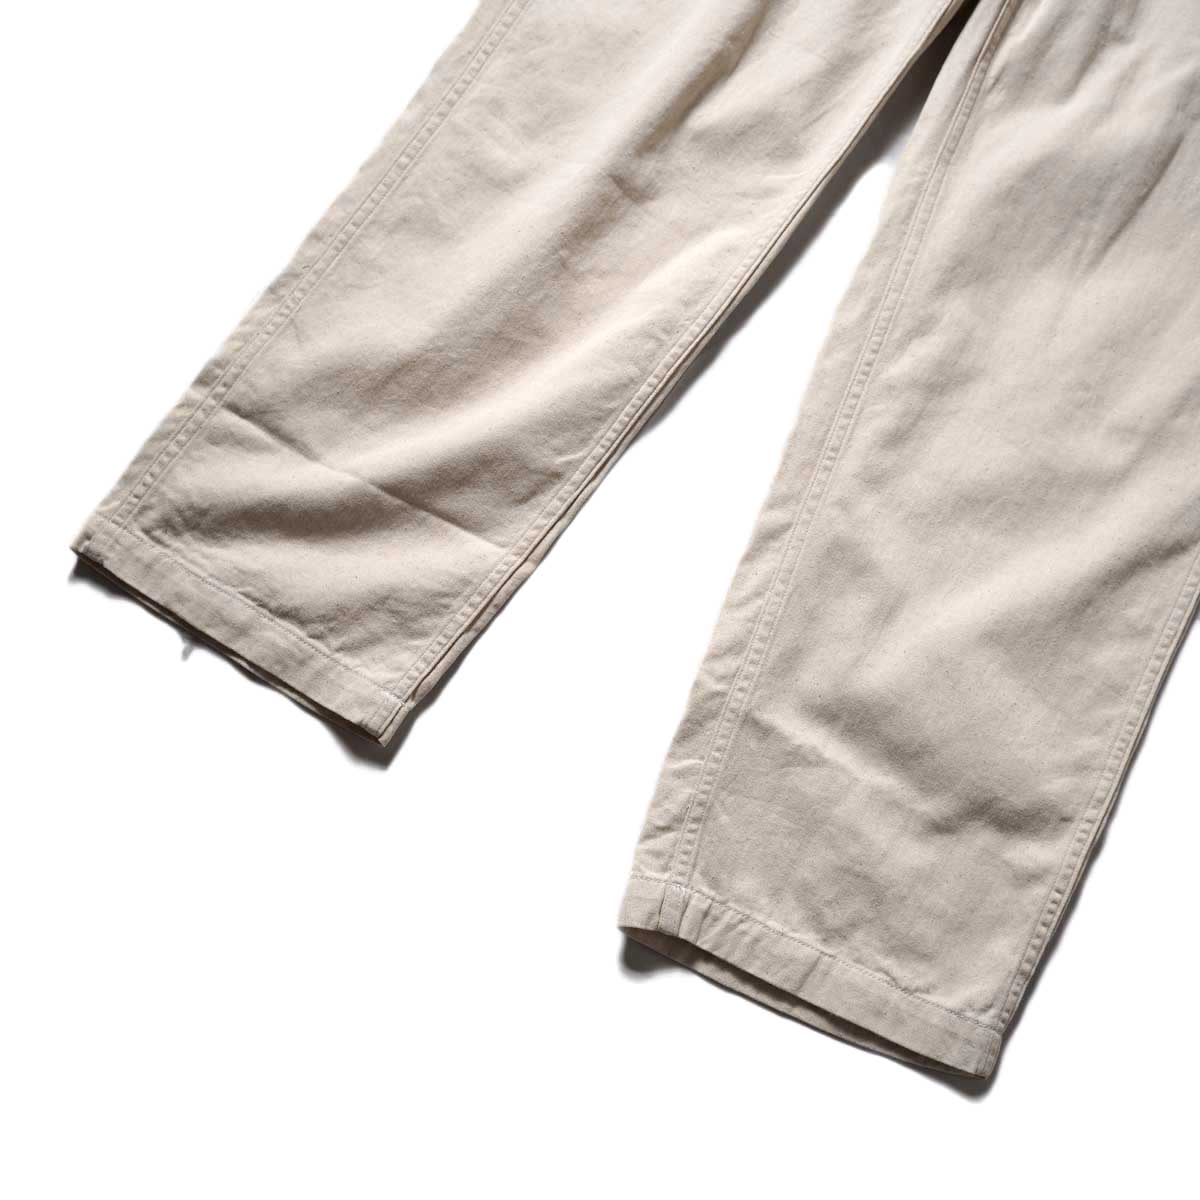 ENGINEERED GARMENTS / FATIGUE PANTS - Natural 6.5oz Flat Twill (Natural)裾